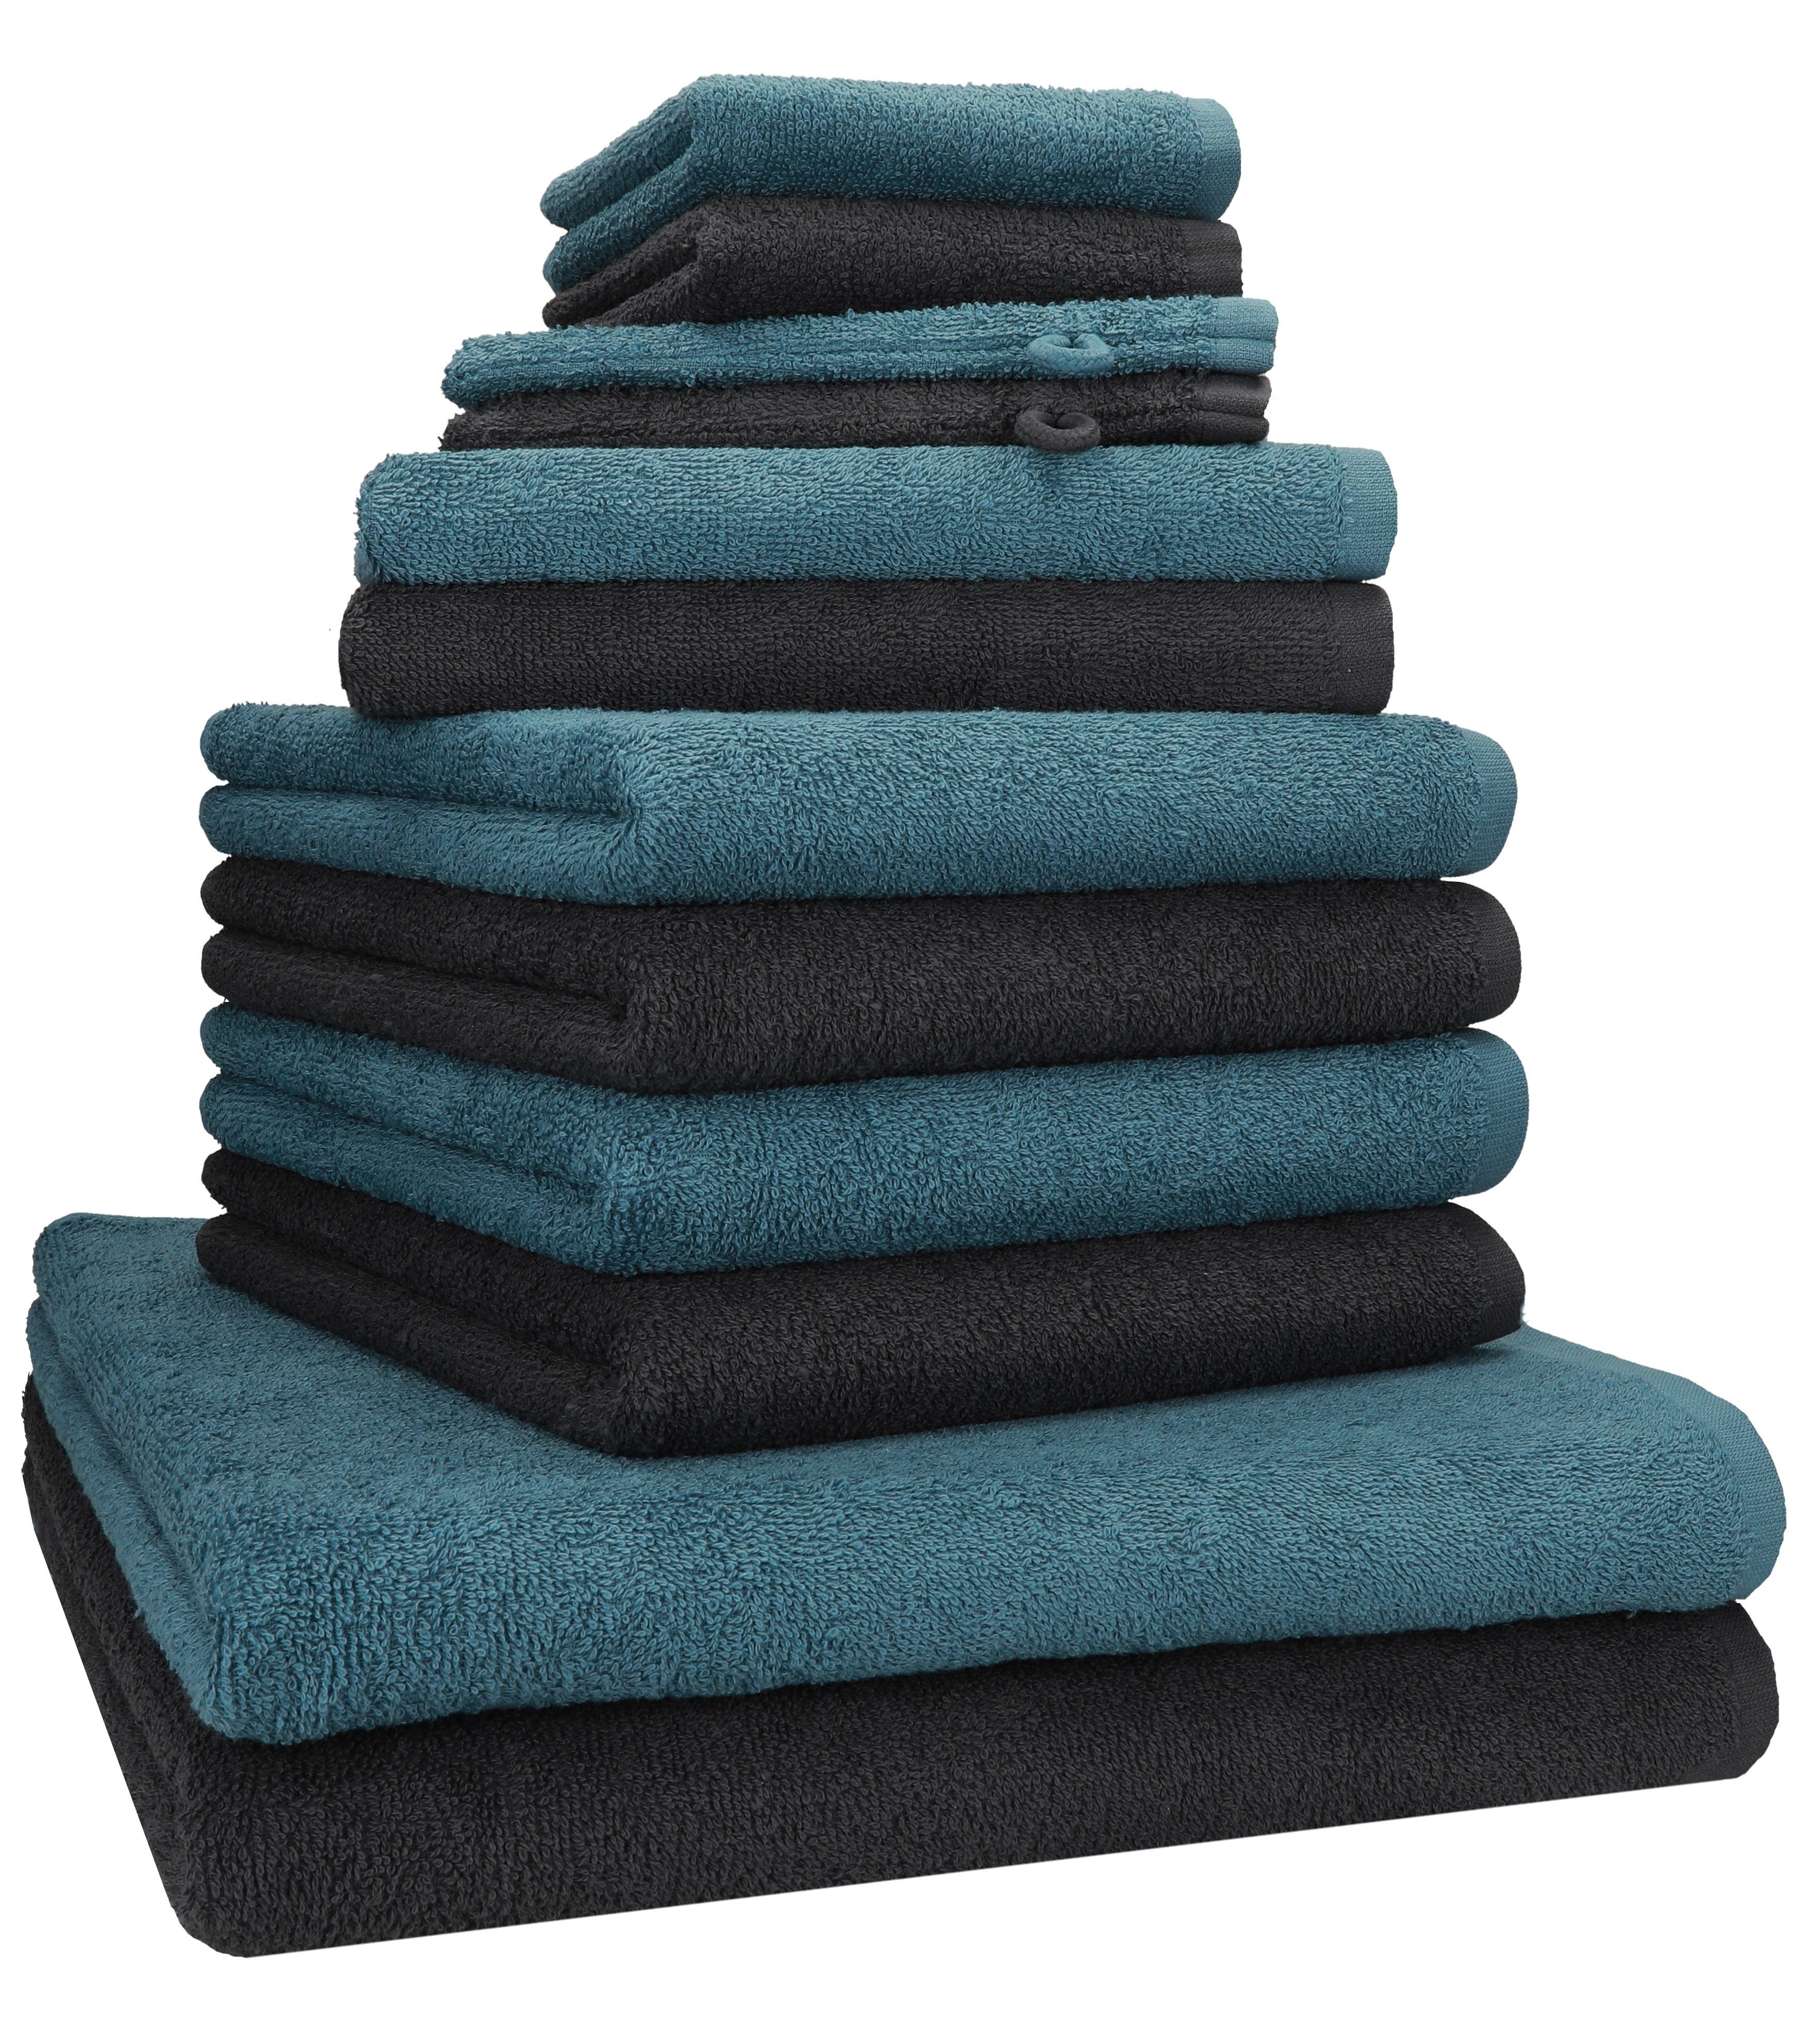 Betz Handtuch Set 12 TLG. Handtuch Set BERLIN Farbe graphit - taubenblau,  100% Baumwolle